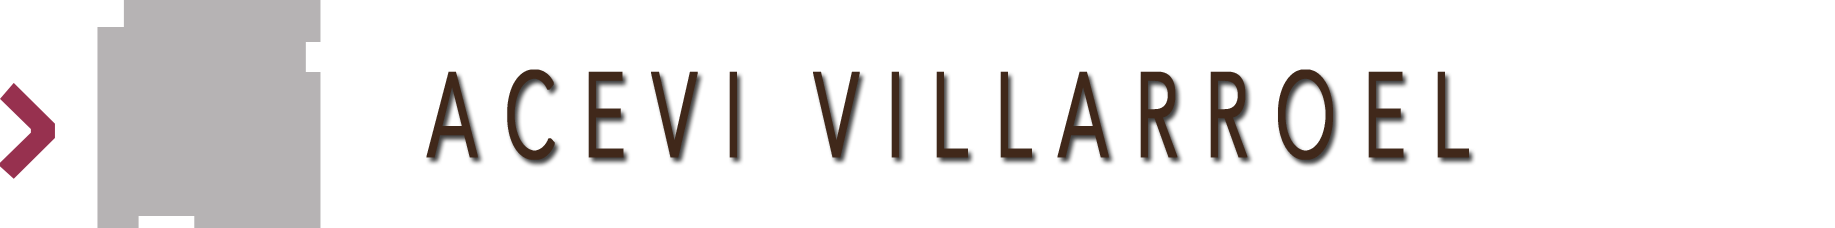 Hotel Acevi Villarroel home page